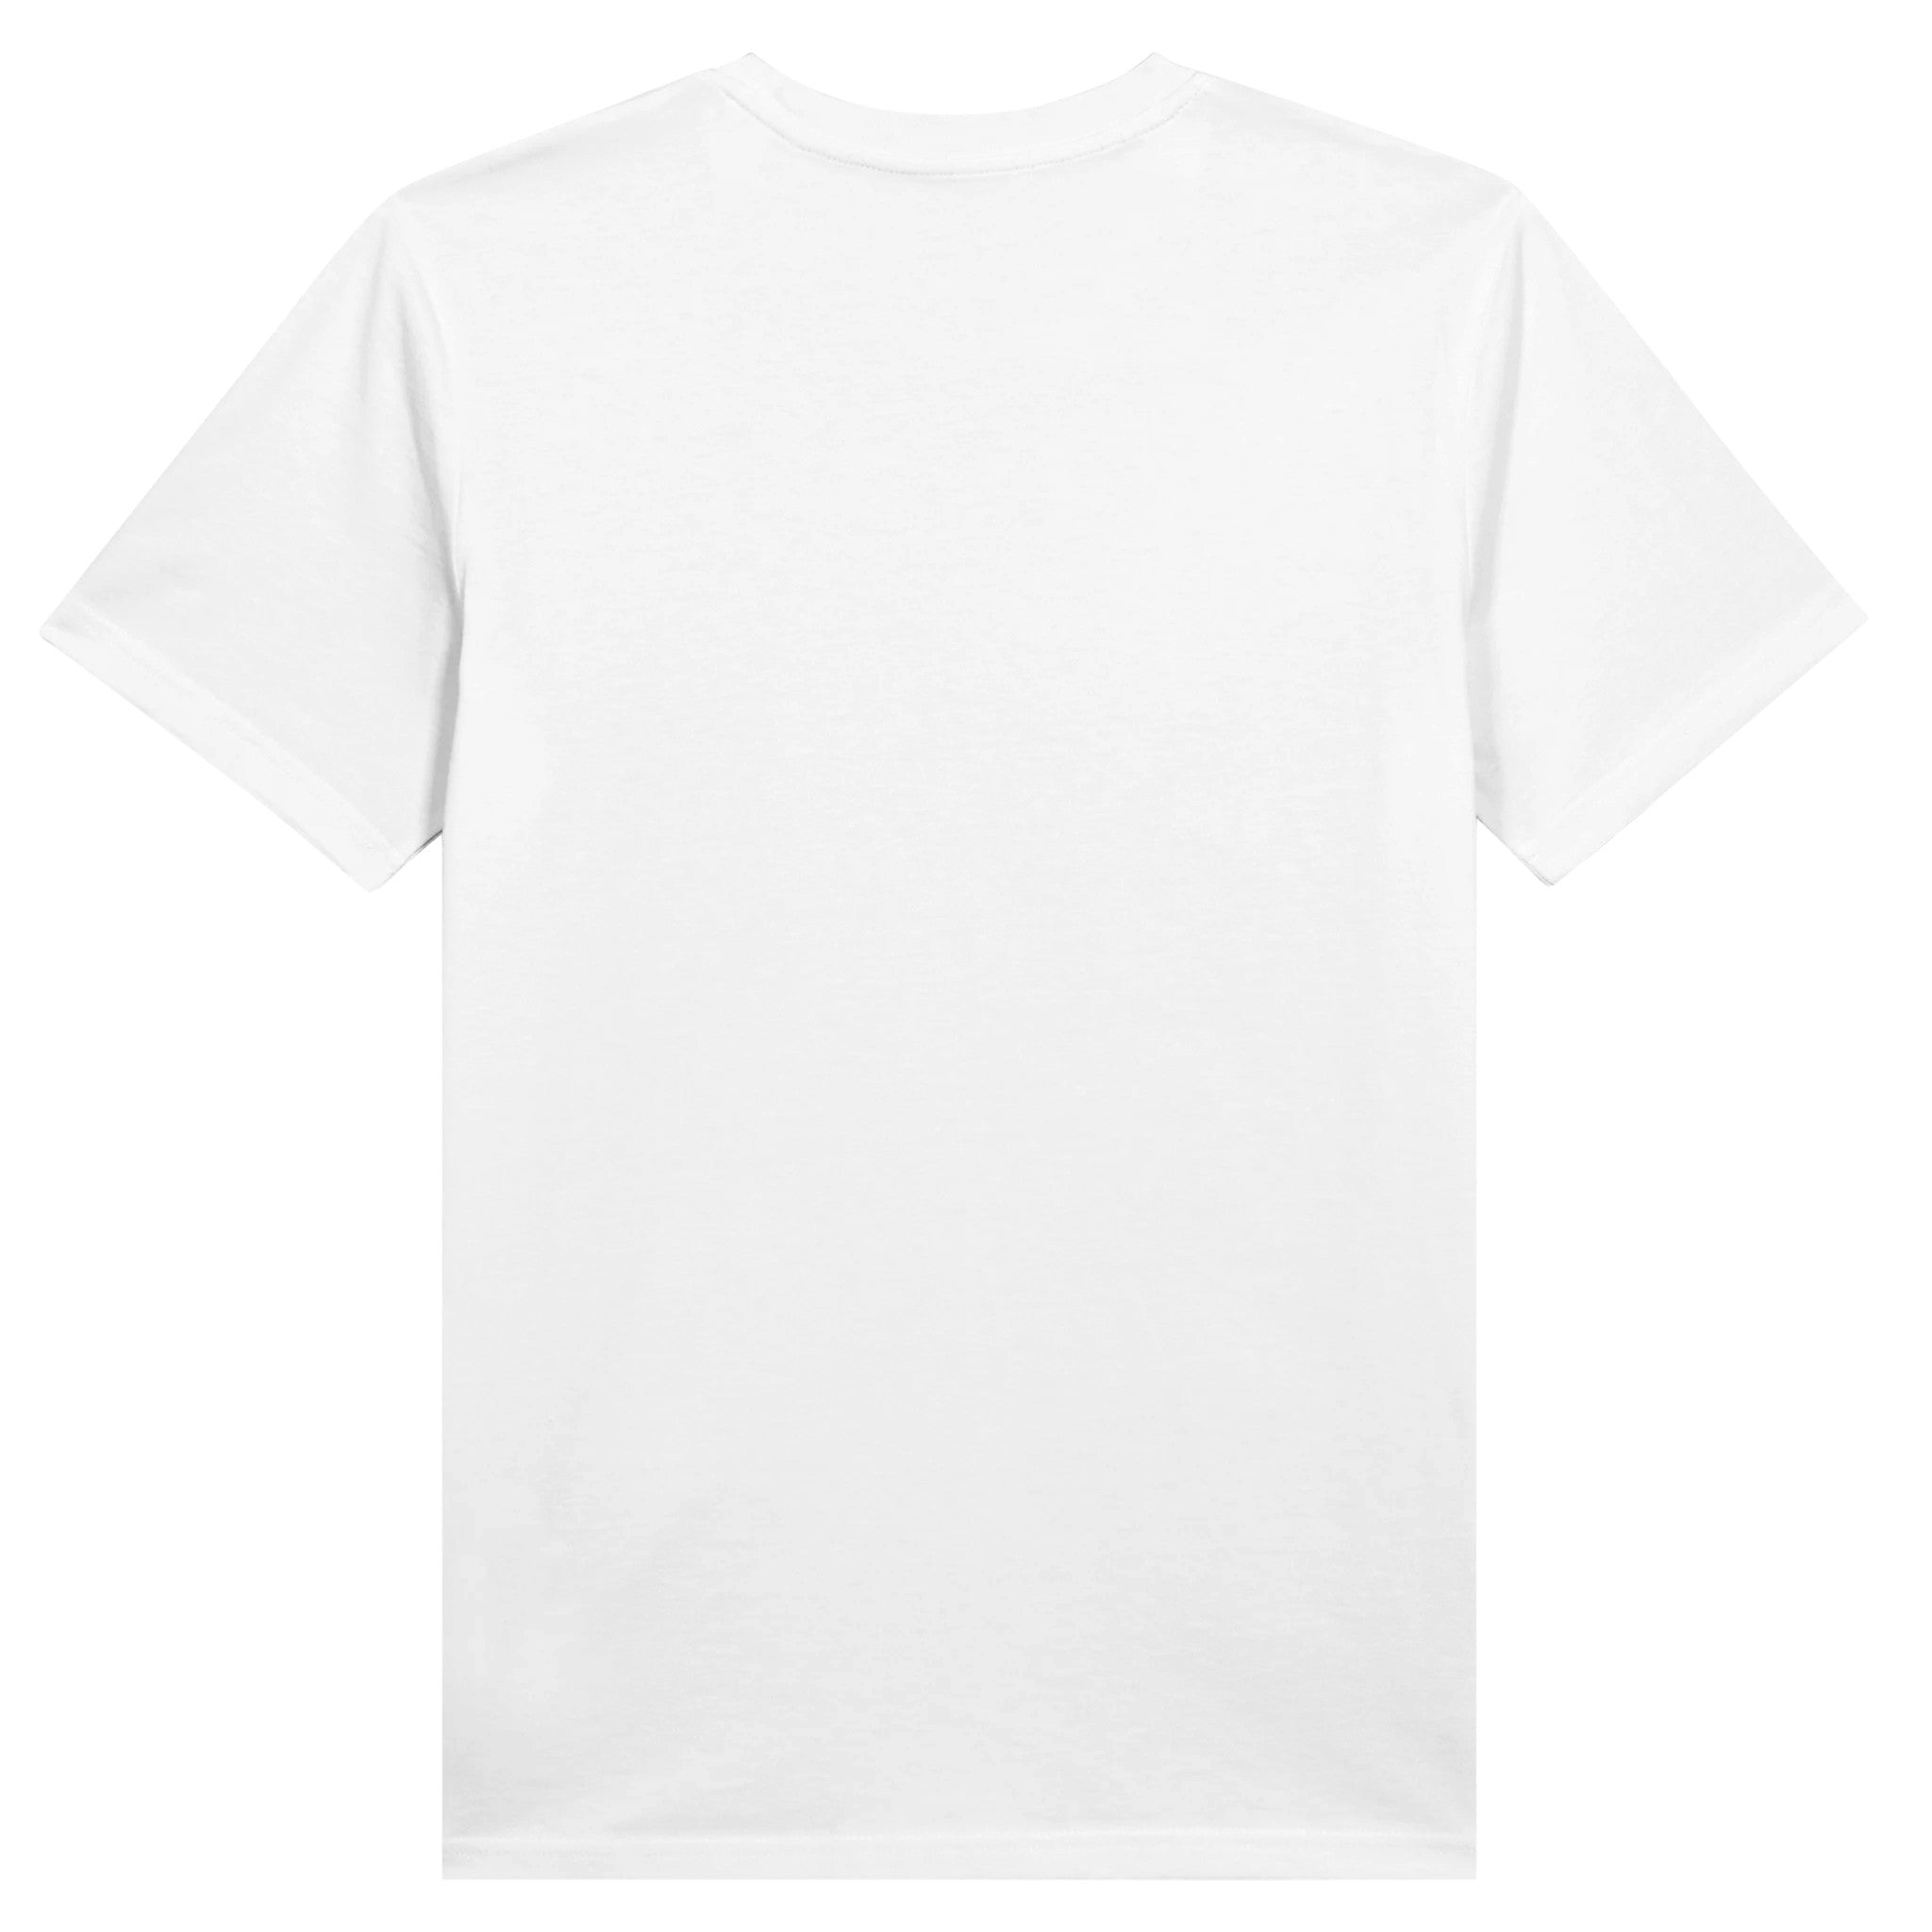 FURYCRY T-Shirt WEISS - FURYCRY® | Tennis & Streetwear Apparel